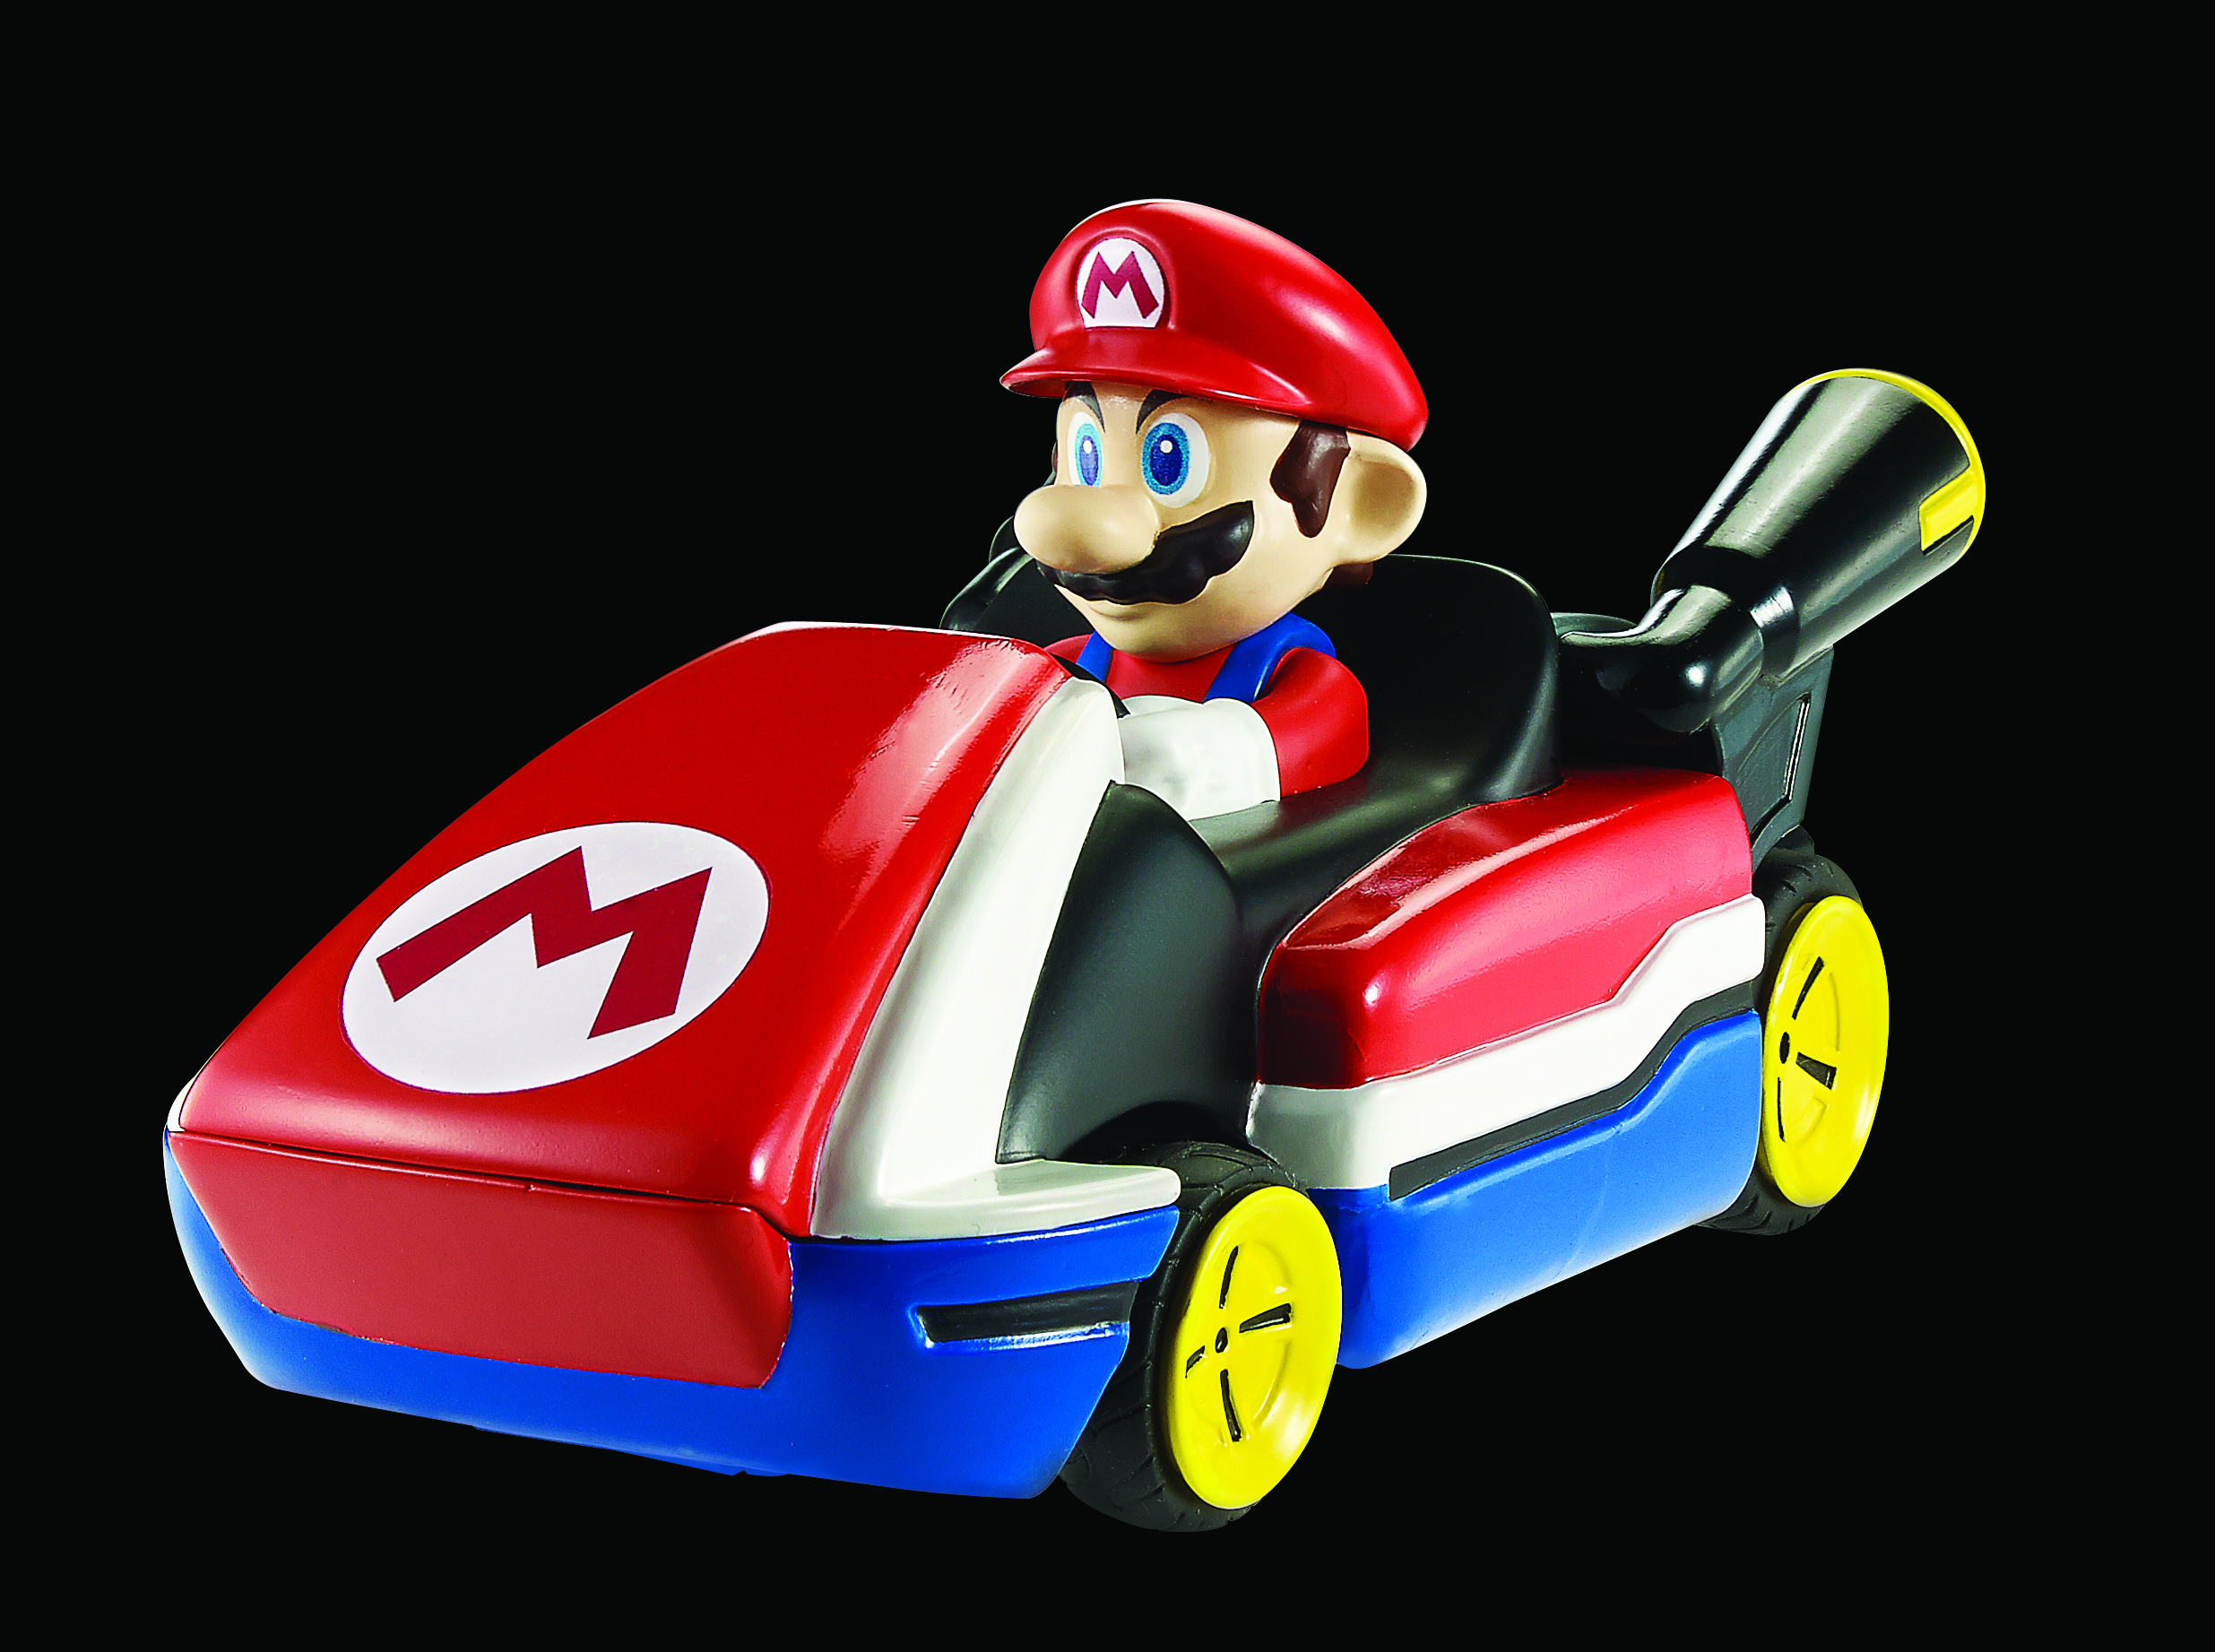 Hot Wheels Ai Mario Kart Edition debuts at San Diego Comic-Con.